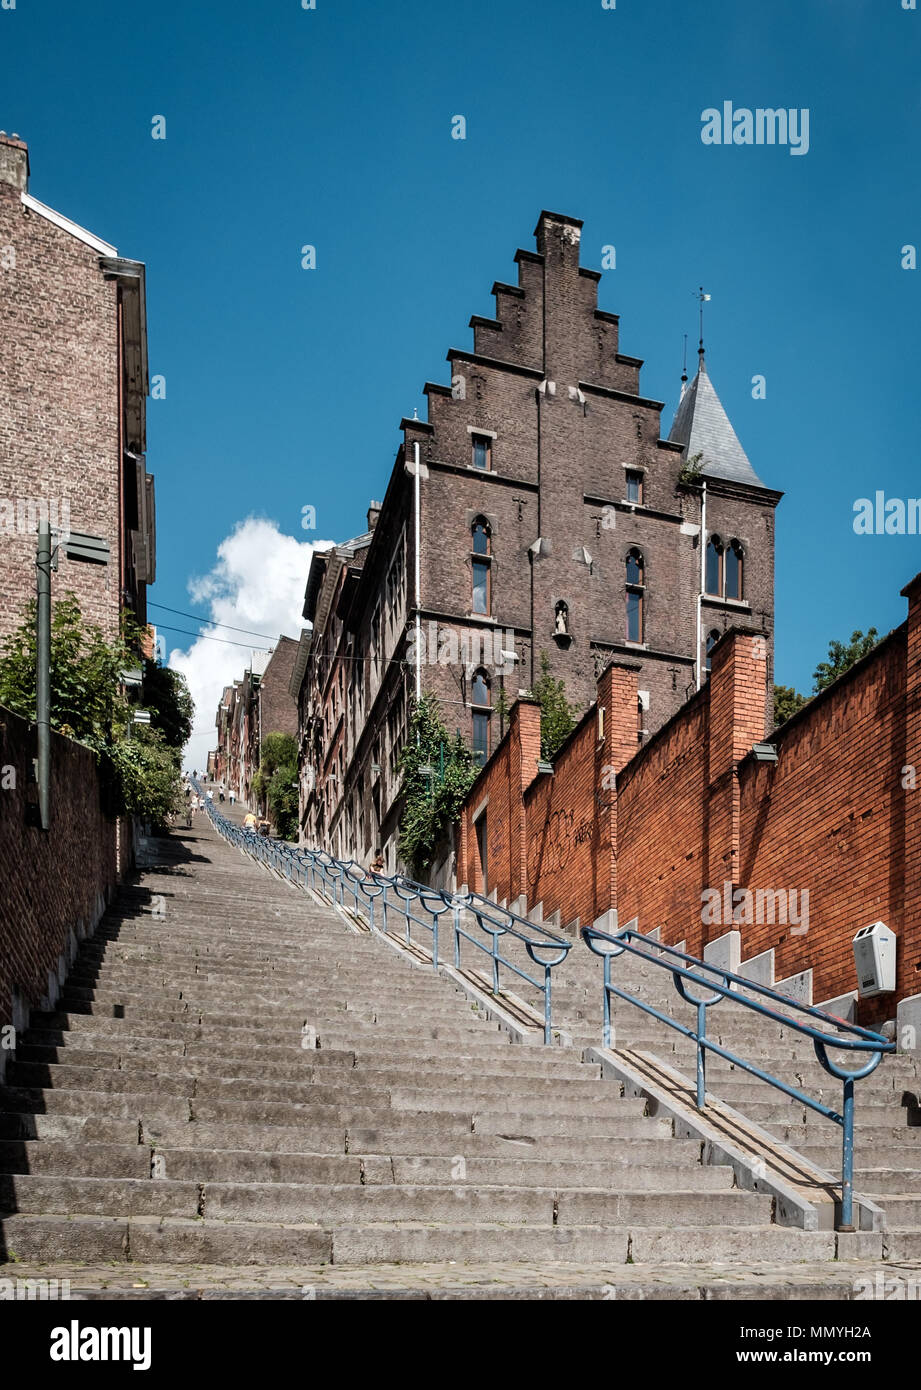 View on Montagne de Beuren stairway in the city of Liège in Belgium. Stock Photo